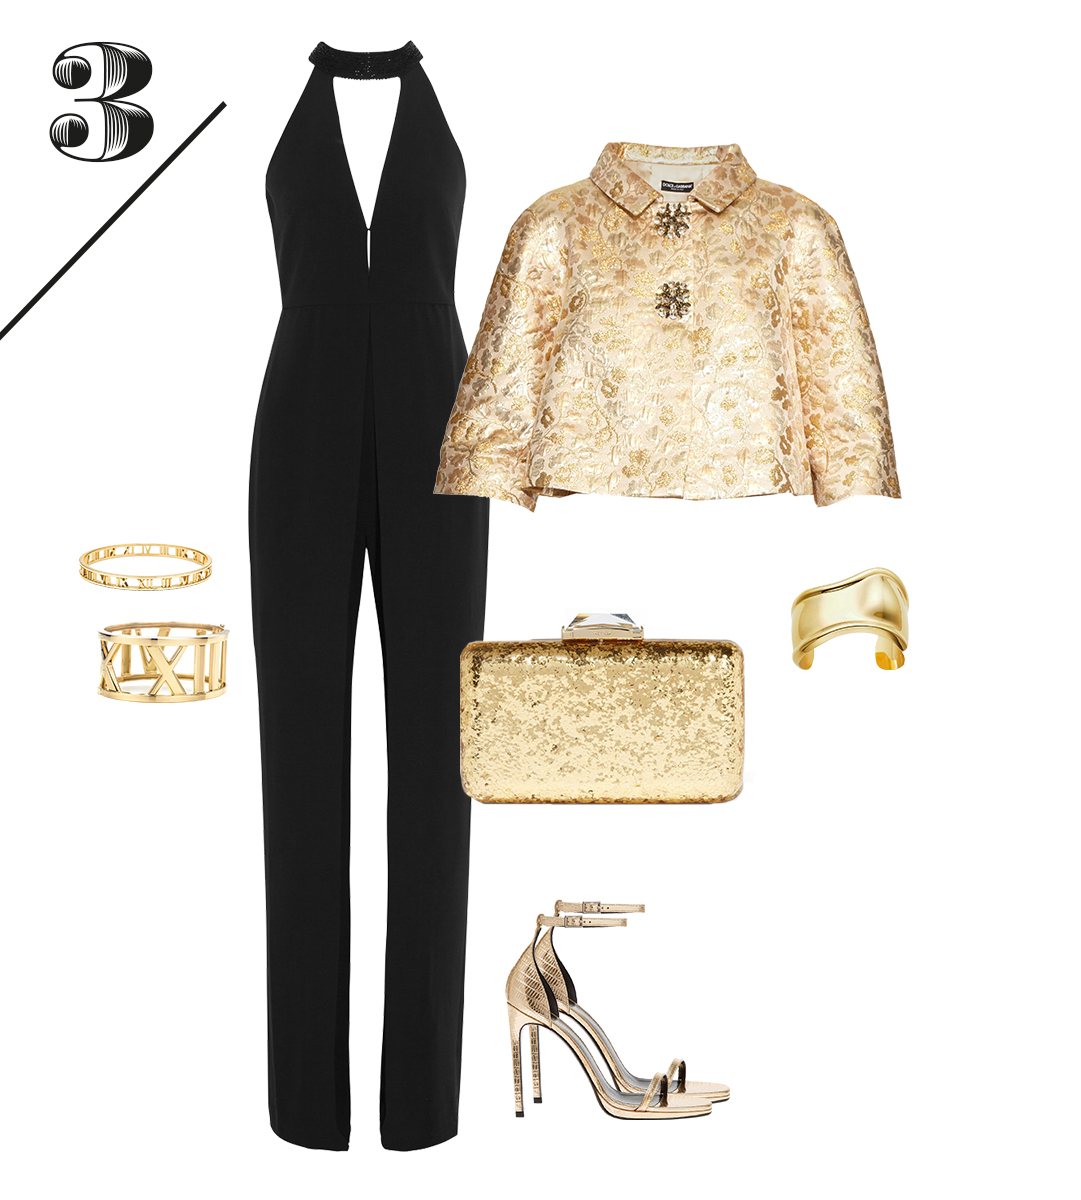 Комбинезон Halston Heritage | Жакет Dolce&amp;Gabbana | Босоножки Saint Laurent | Клатч Kotur&nbsp; |&nbsp; Золотые браслеты Tiffany&amp;Co.
